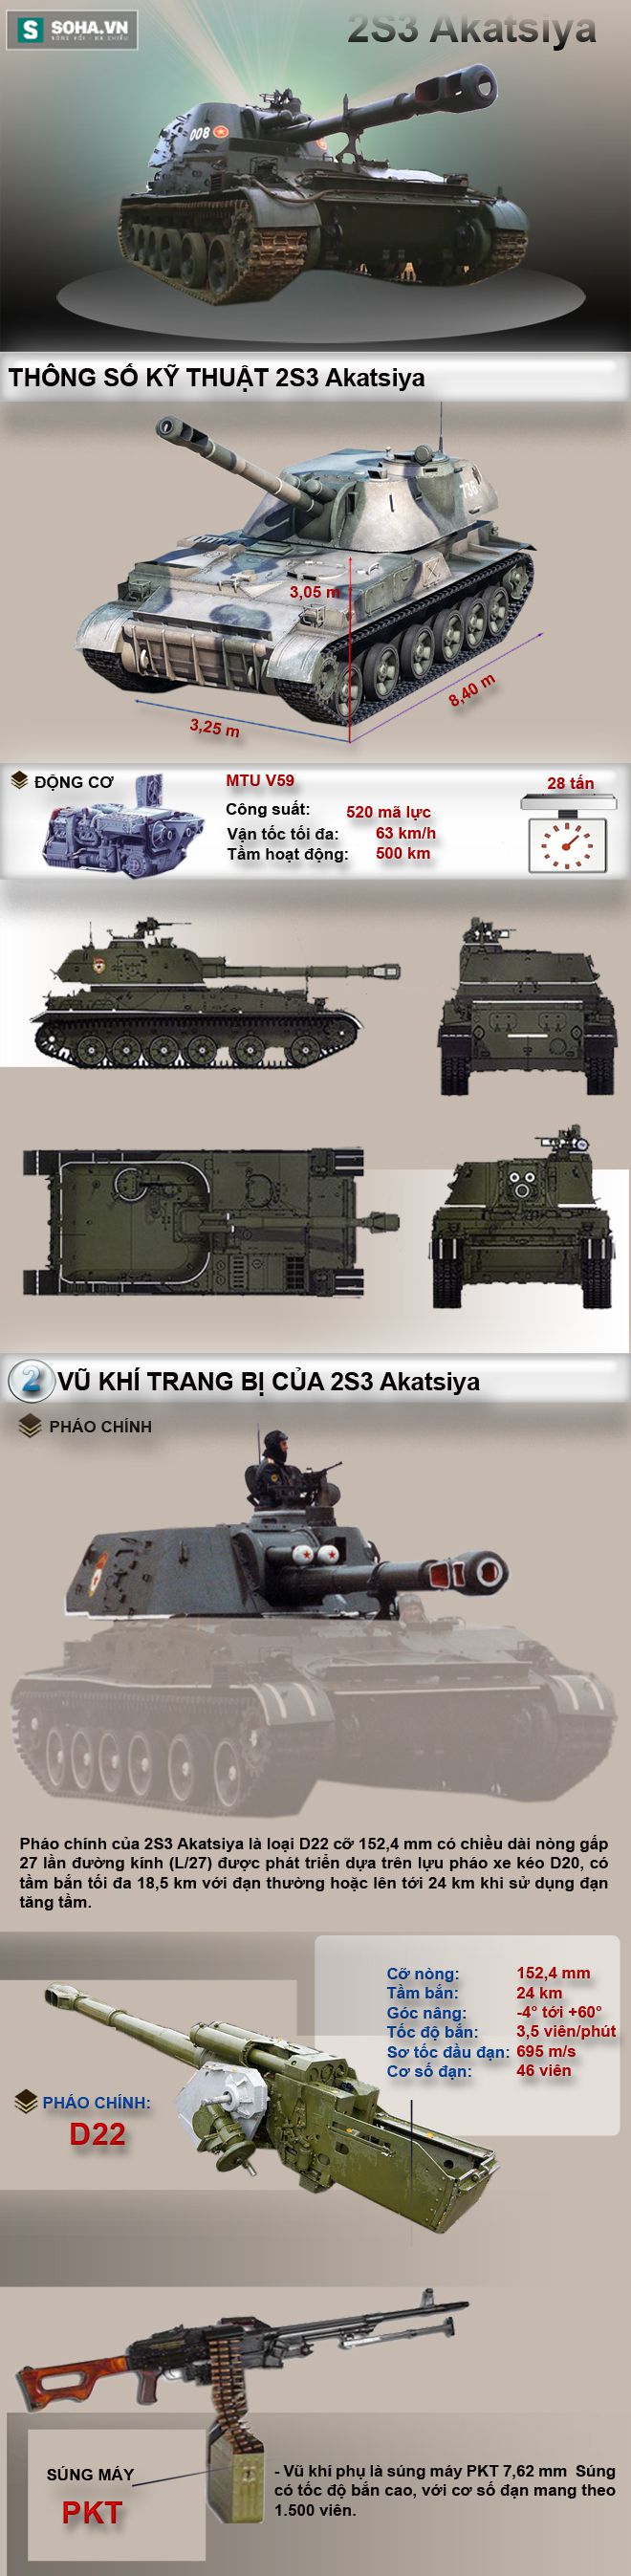 Khám phá sức mạnh pháo tự hành 2S3 Akatsiya - Ảnh 1.